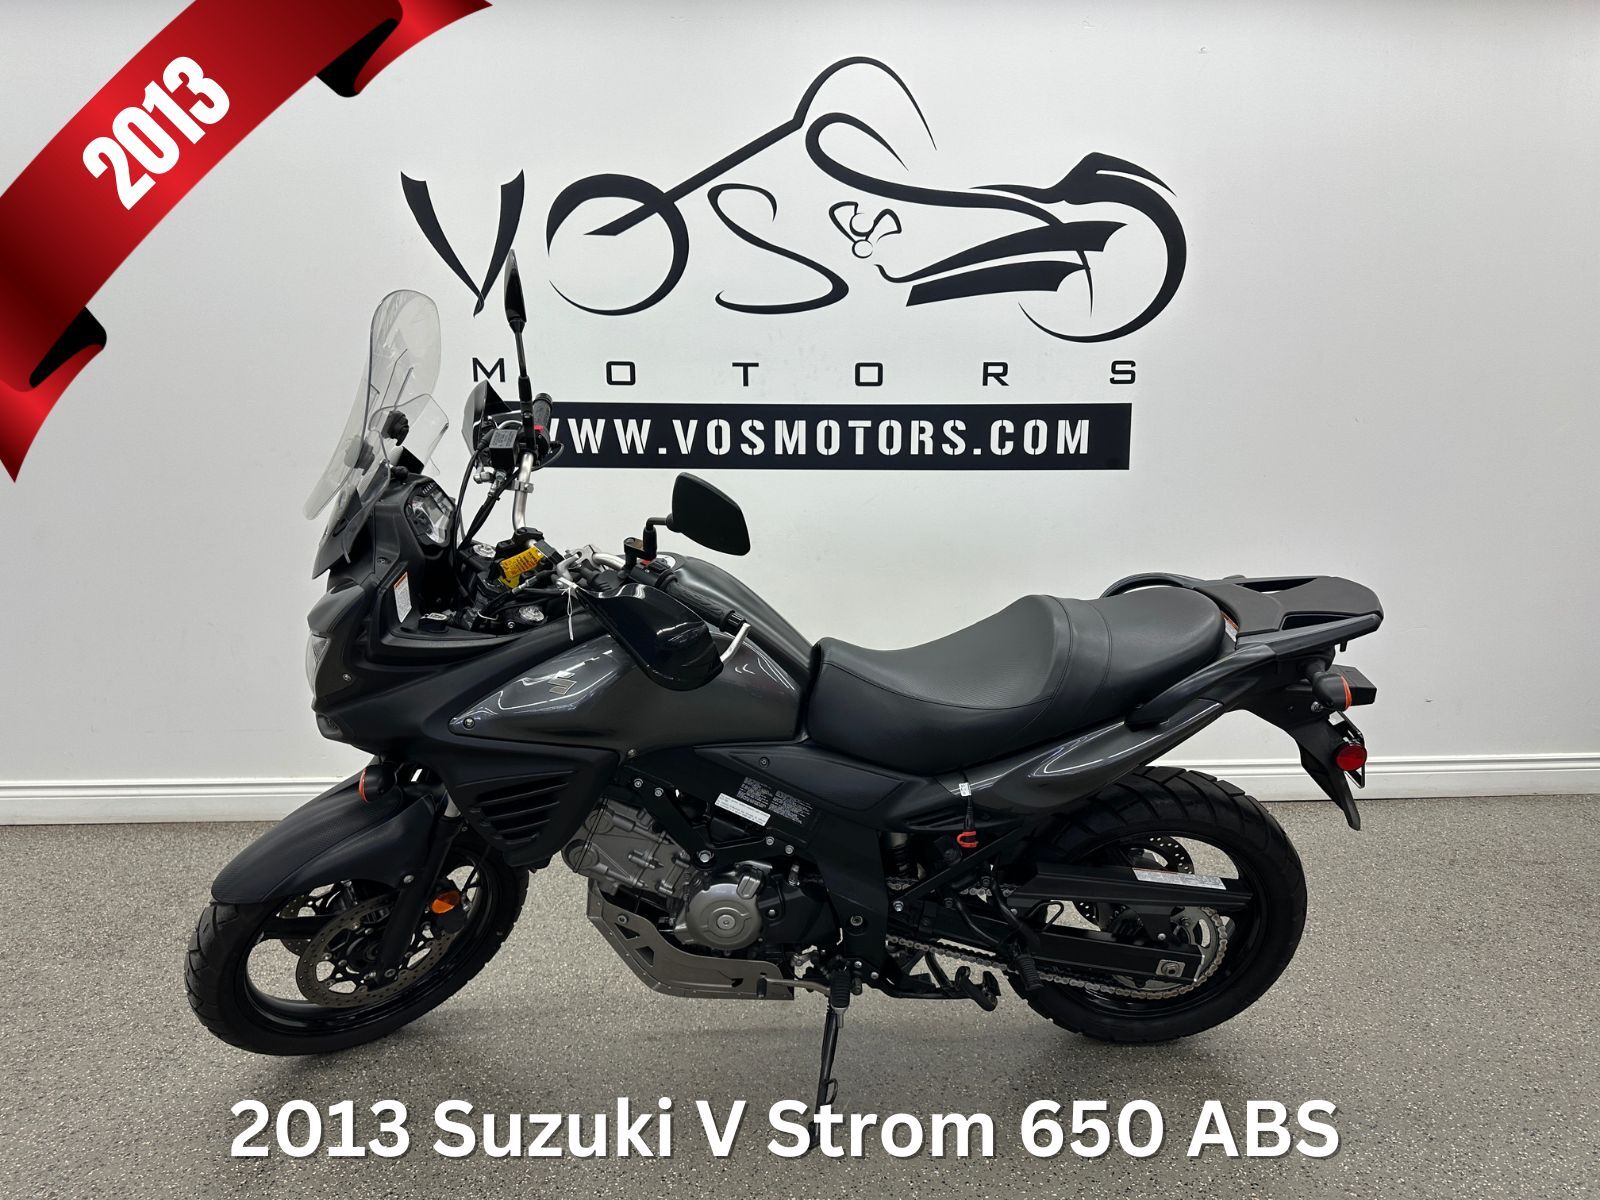 2013 Suzuki V Strom 650 ABS Super motard - V5943 - -No Payments for 1 Year**